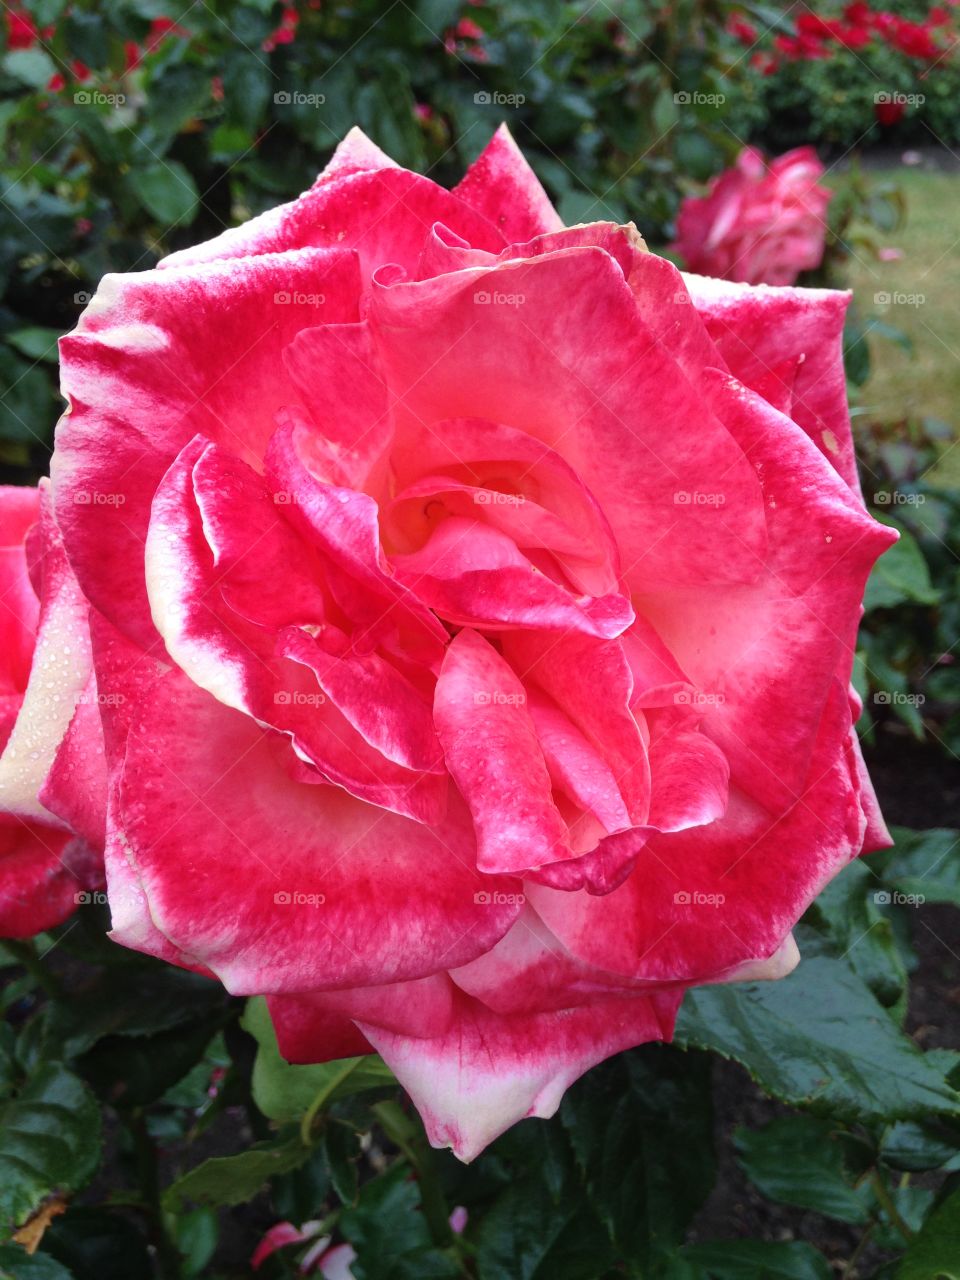 Royal Roses. the queen's garden